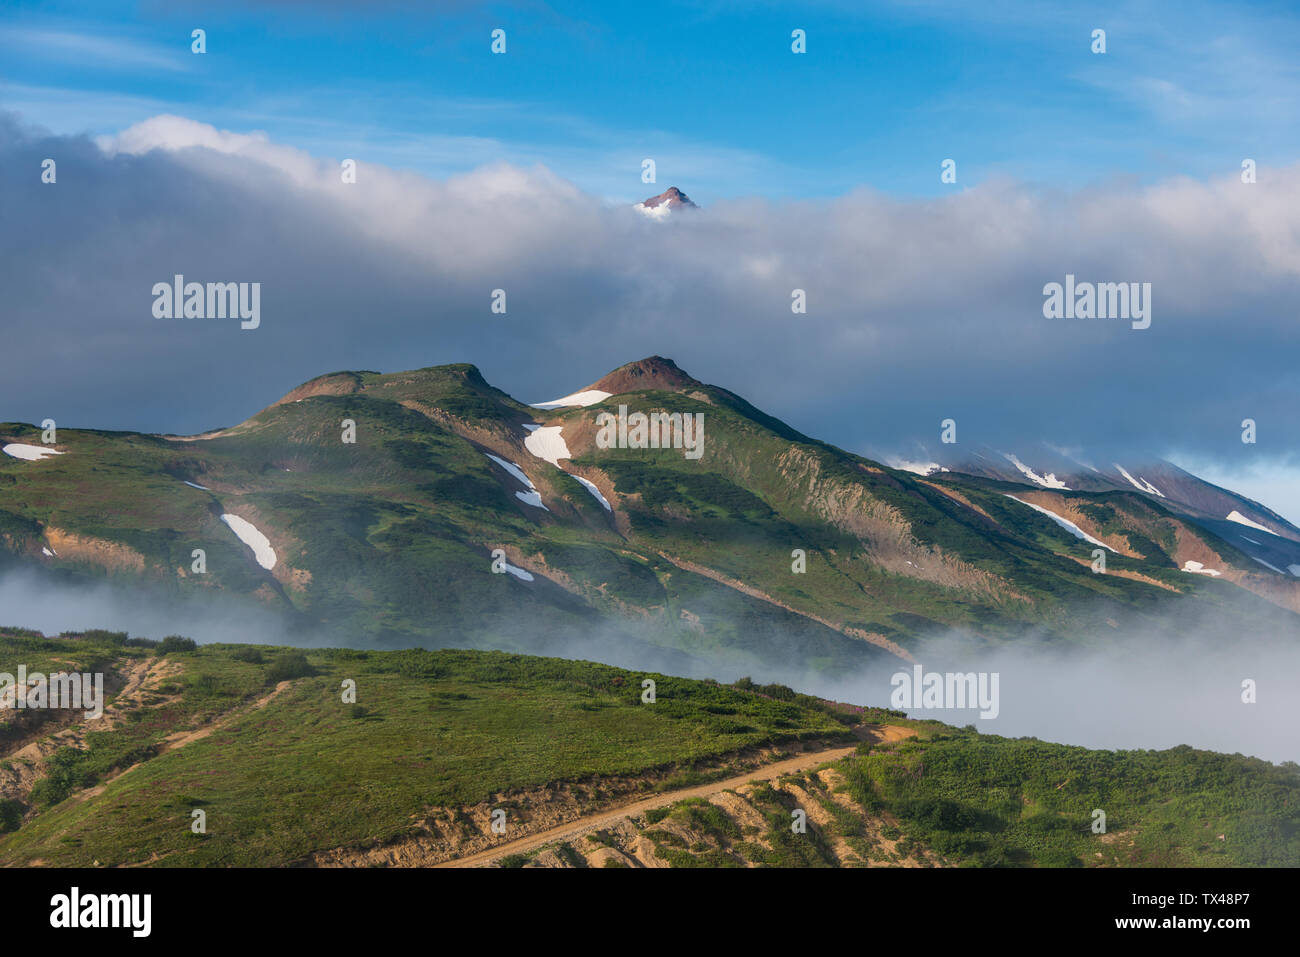 Rusia, Kamchatka, en la parte superior del volcán Vilyuchik mirando a través de una nube Foto de stock